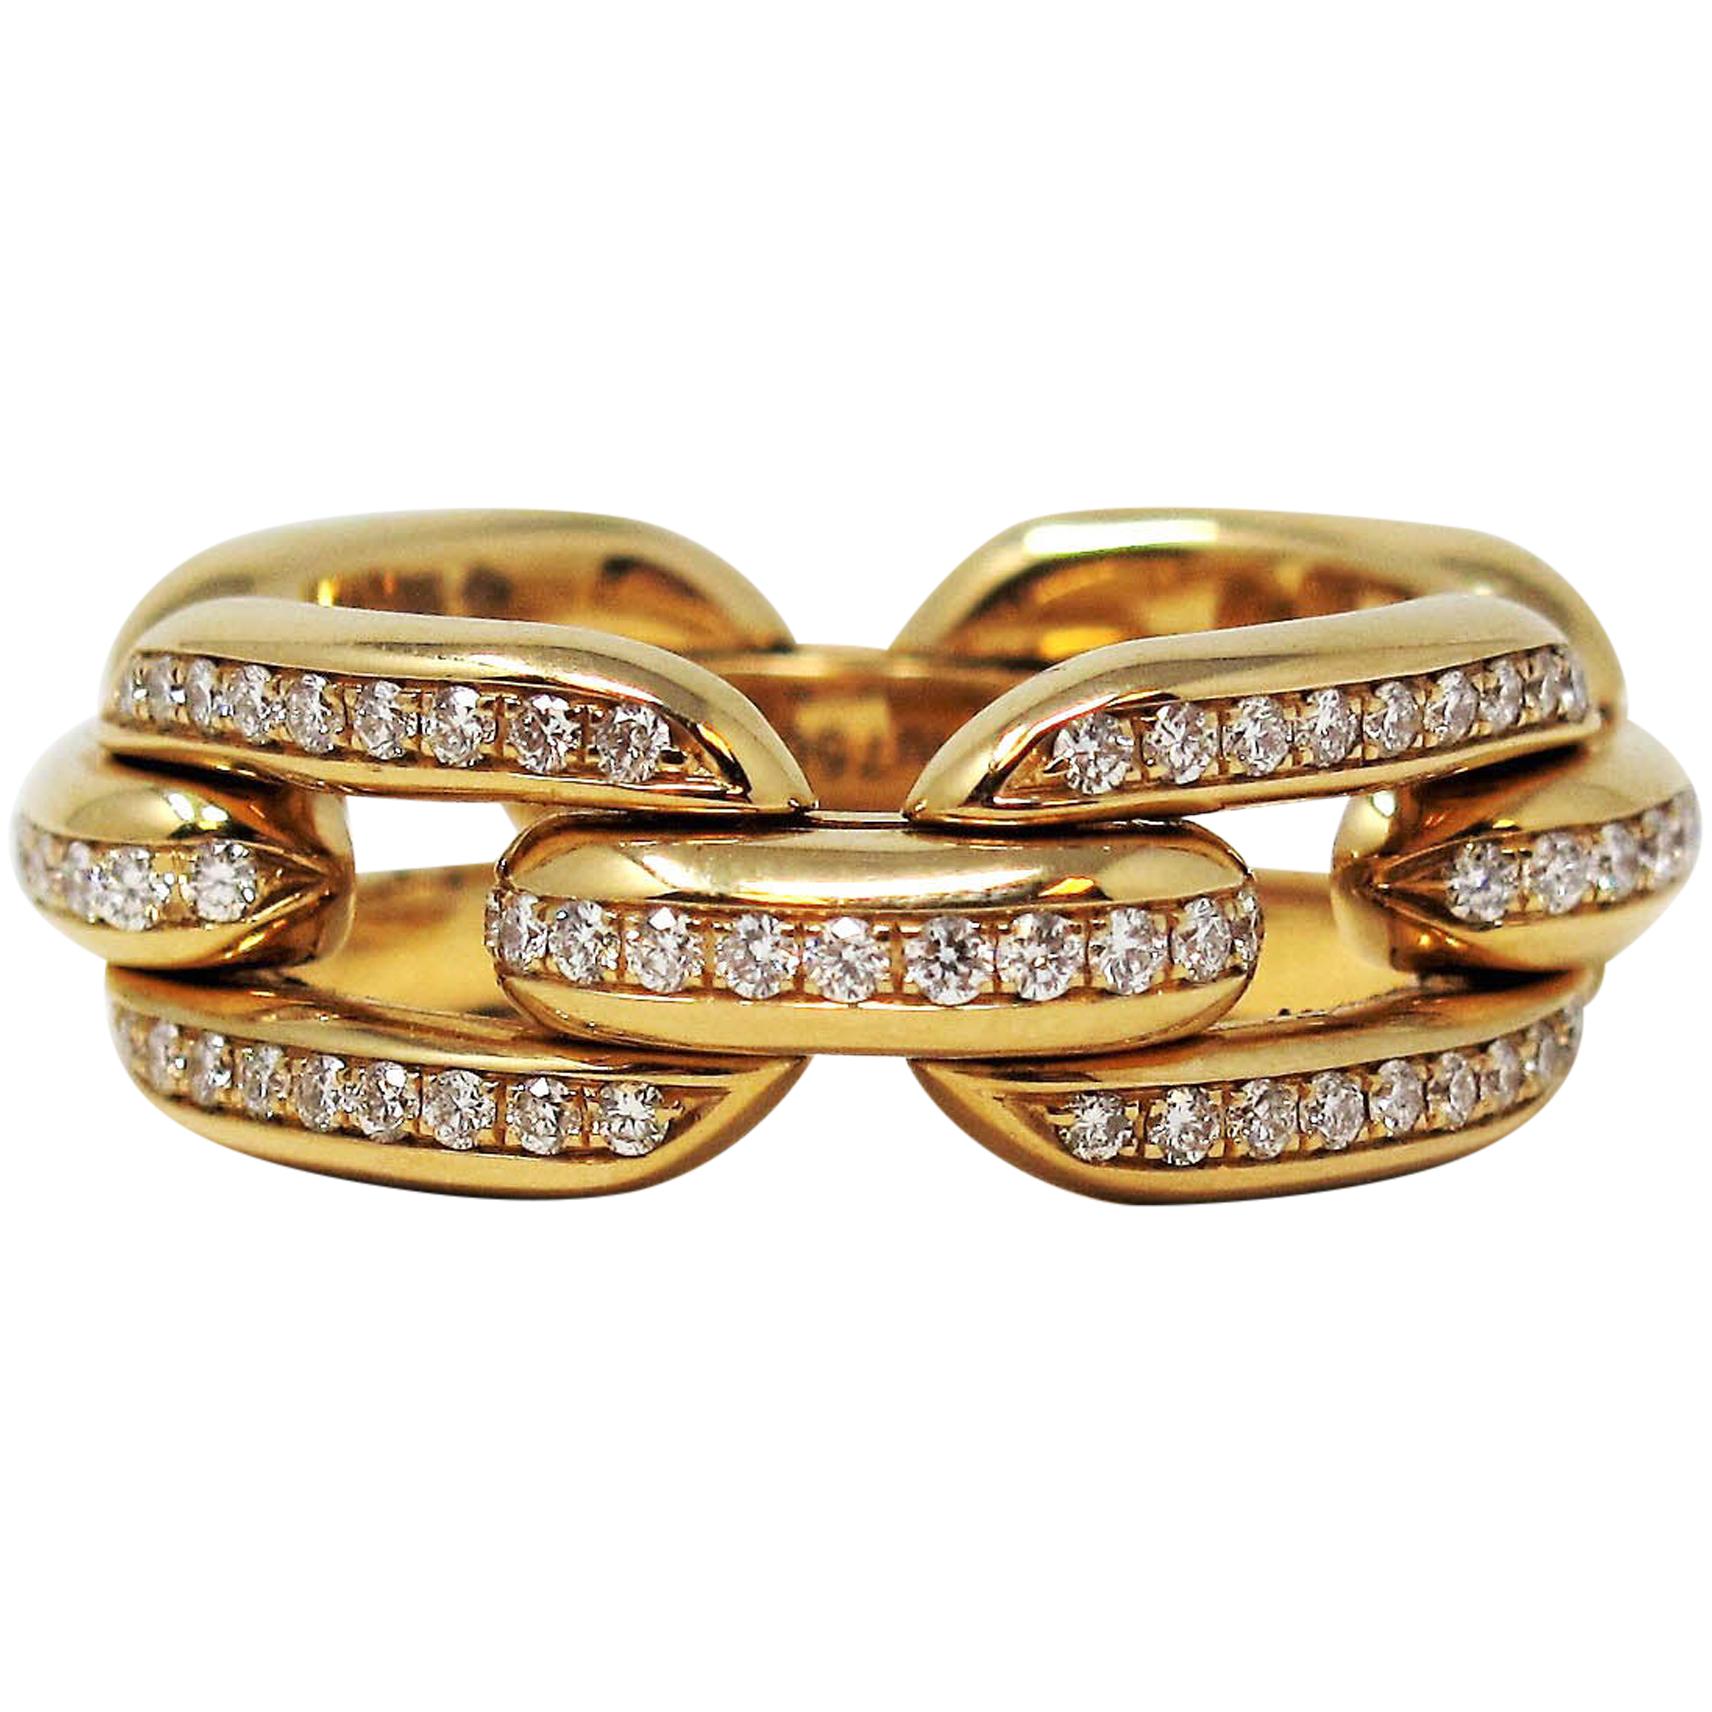 Ralph Lauren Ring - For Sale on 1stDibs | ralph lauren rings, ralph lauren  engagement rings, polo ralph lauren ring